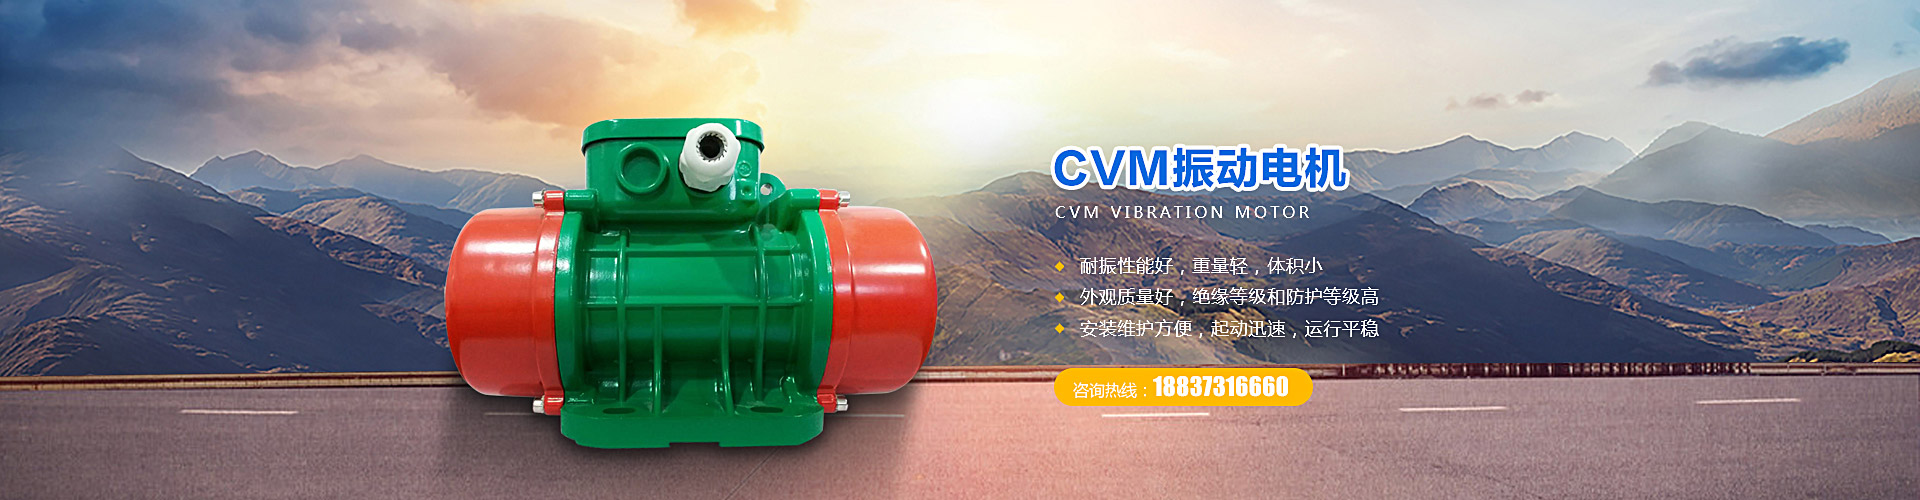 CVM振動(dòng)電機